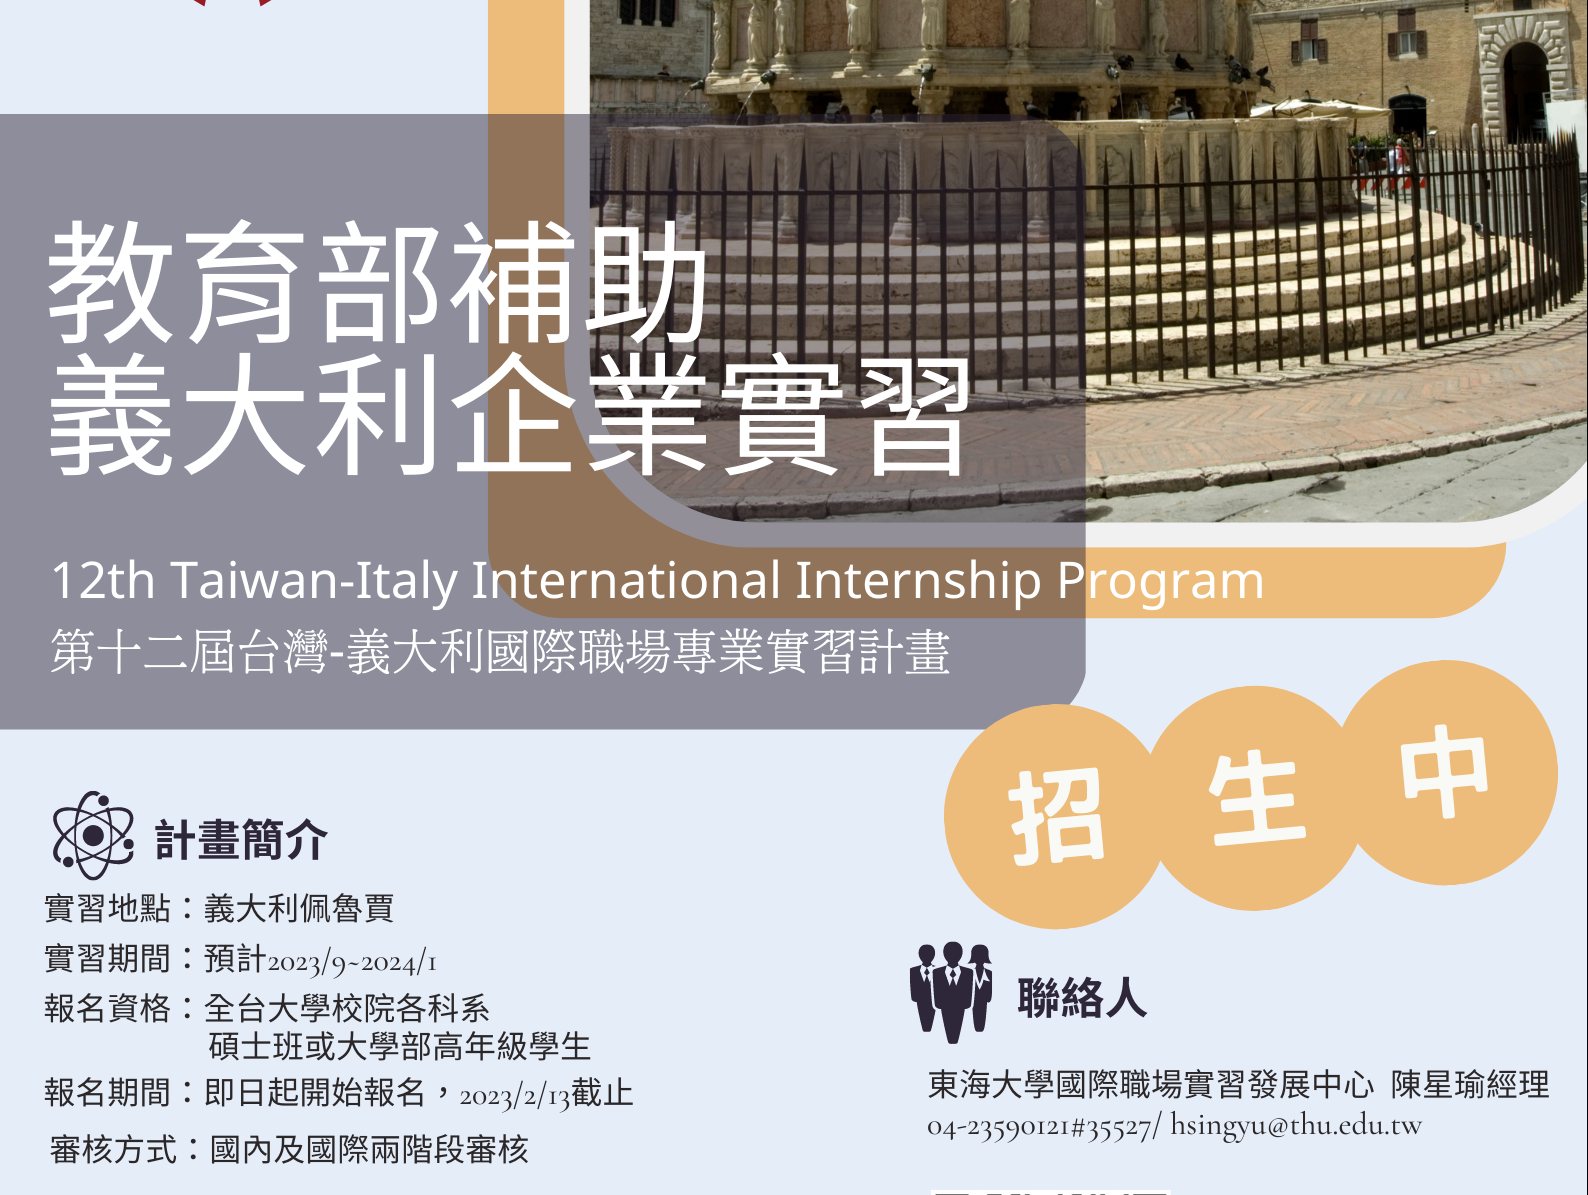 【實習資訊】2023 第十二屆台灣-義大利國際職場專業實習計畫(TIP)_2/13截止